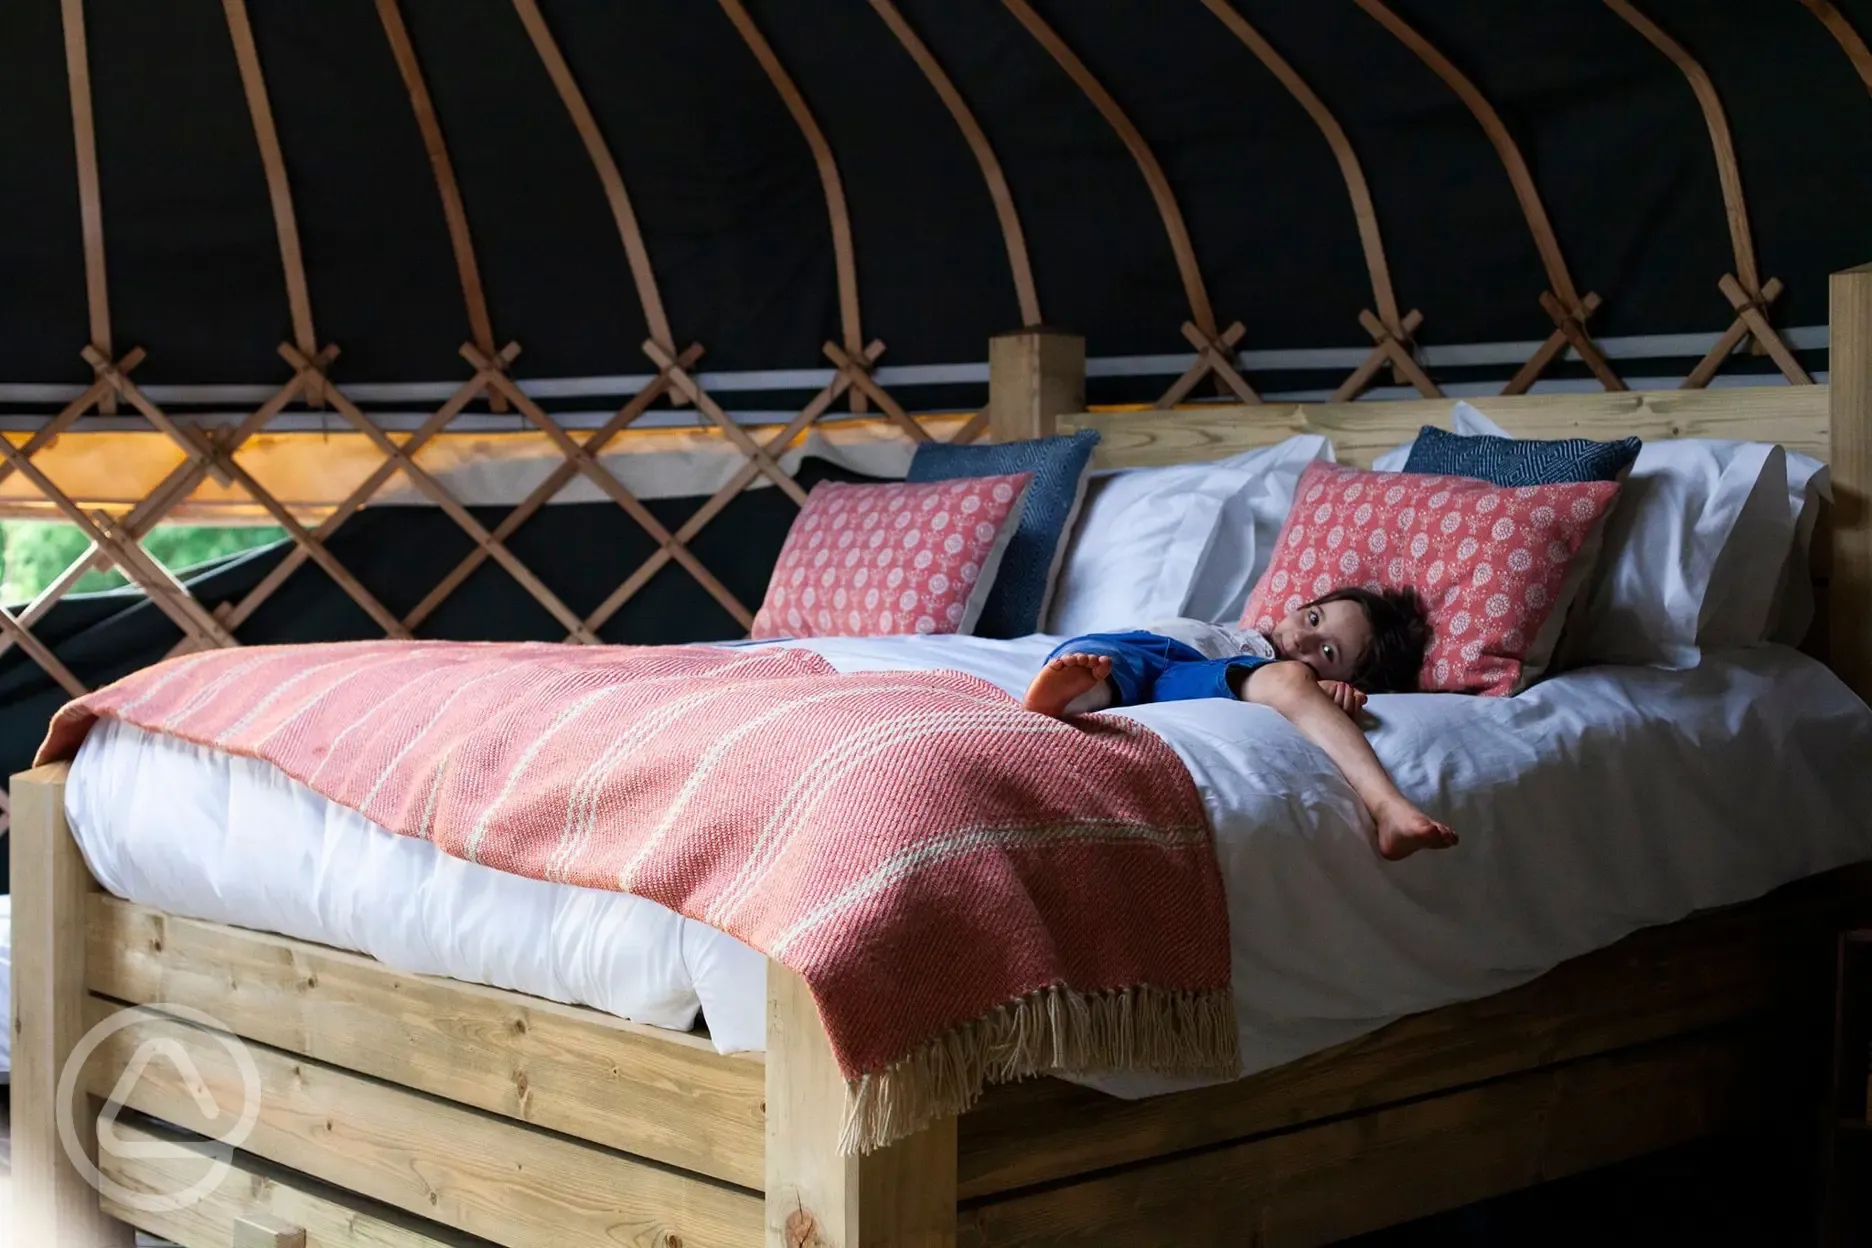 Bed in yurt